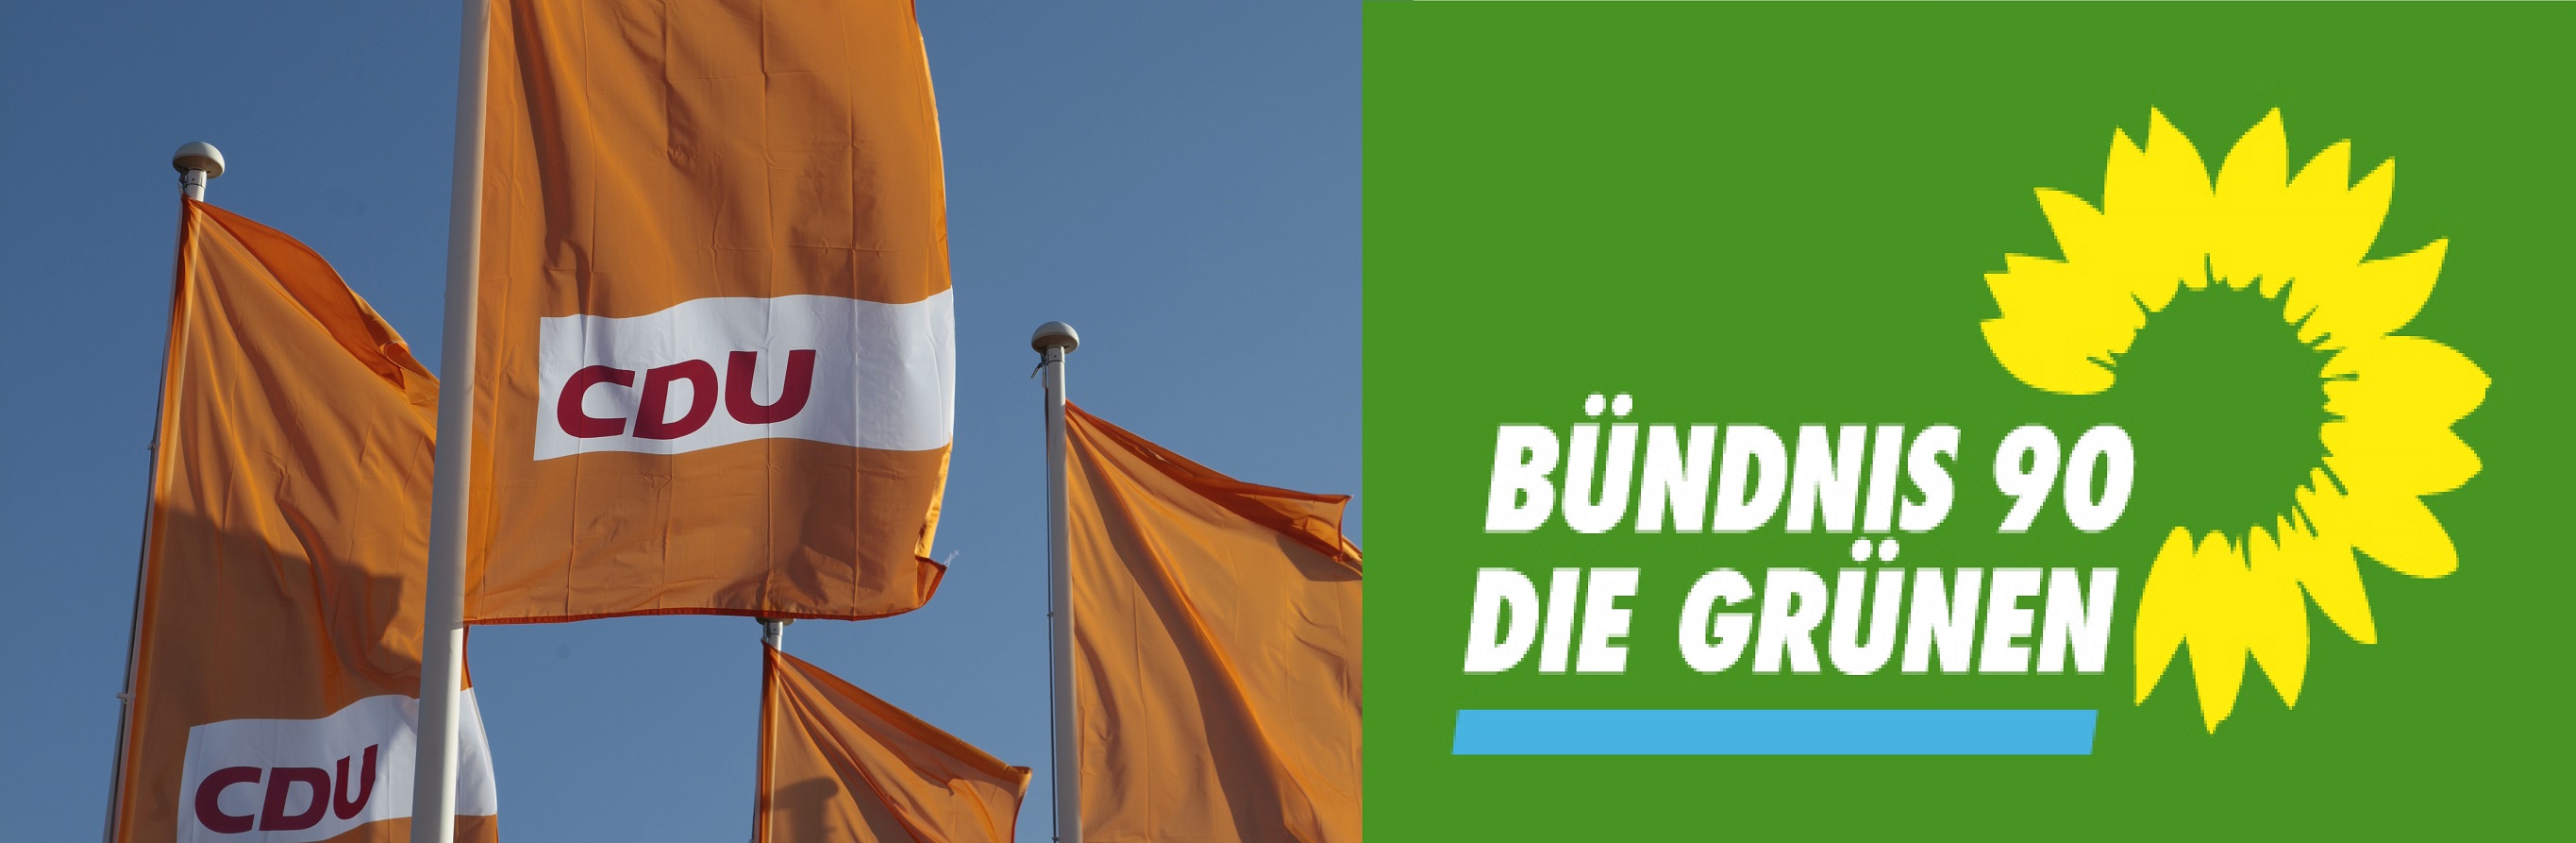 Logos CDU und Grüne